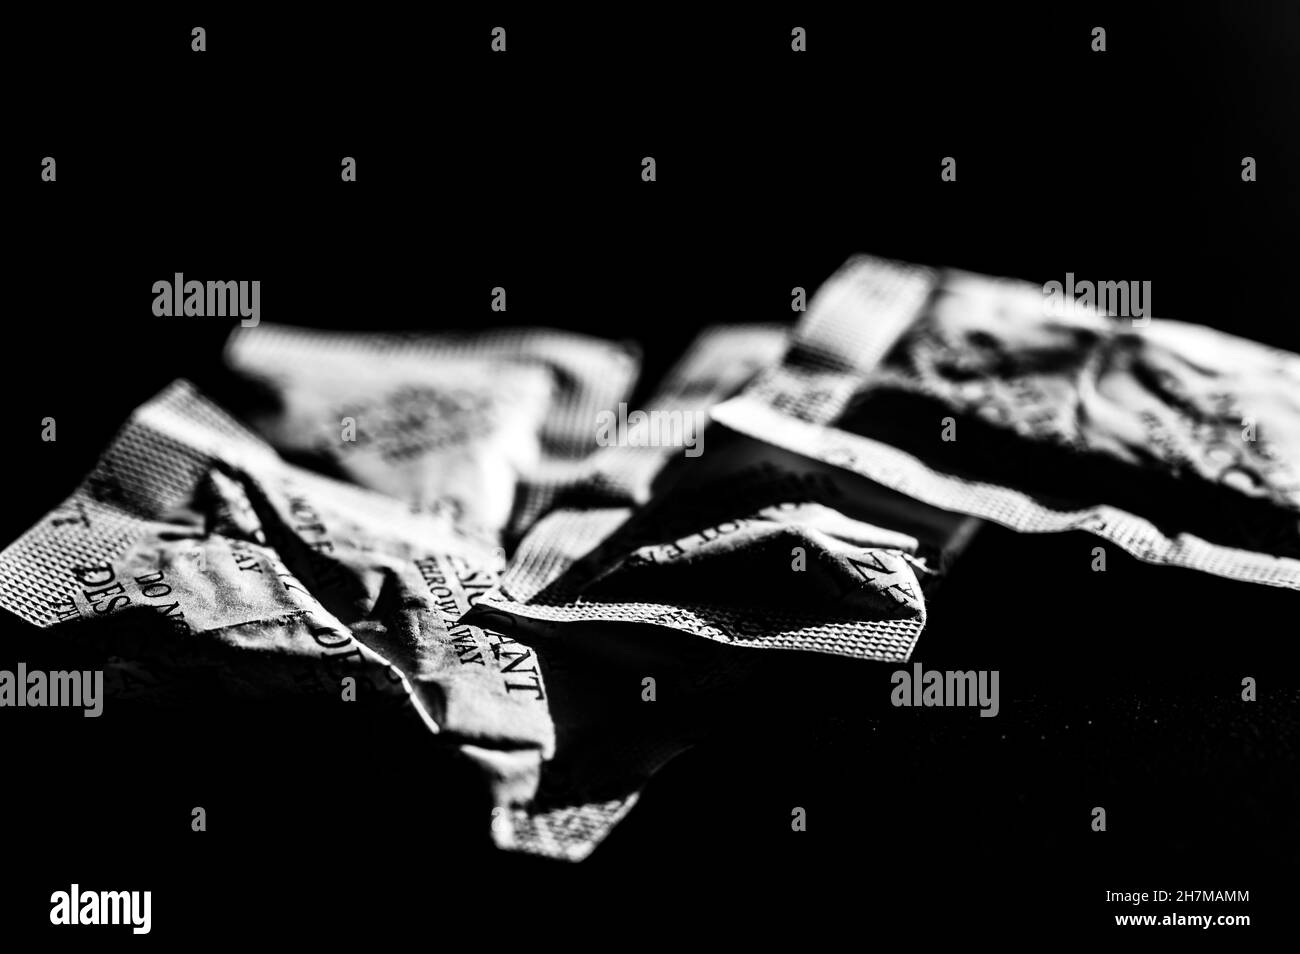 sachets de dessiccant dispersés sur une surface sombre Banque D'Images